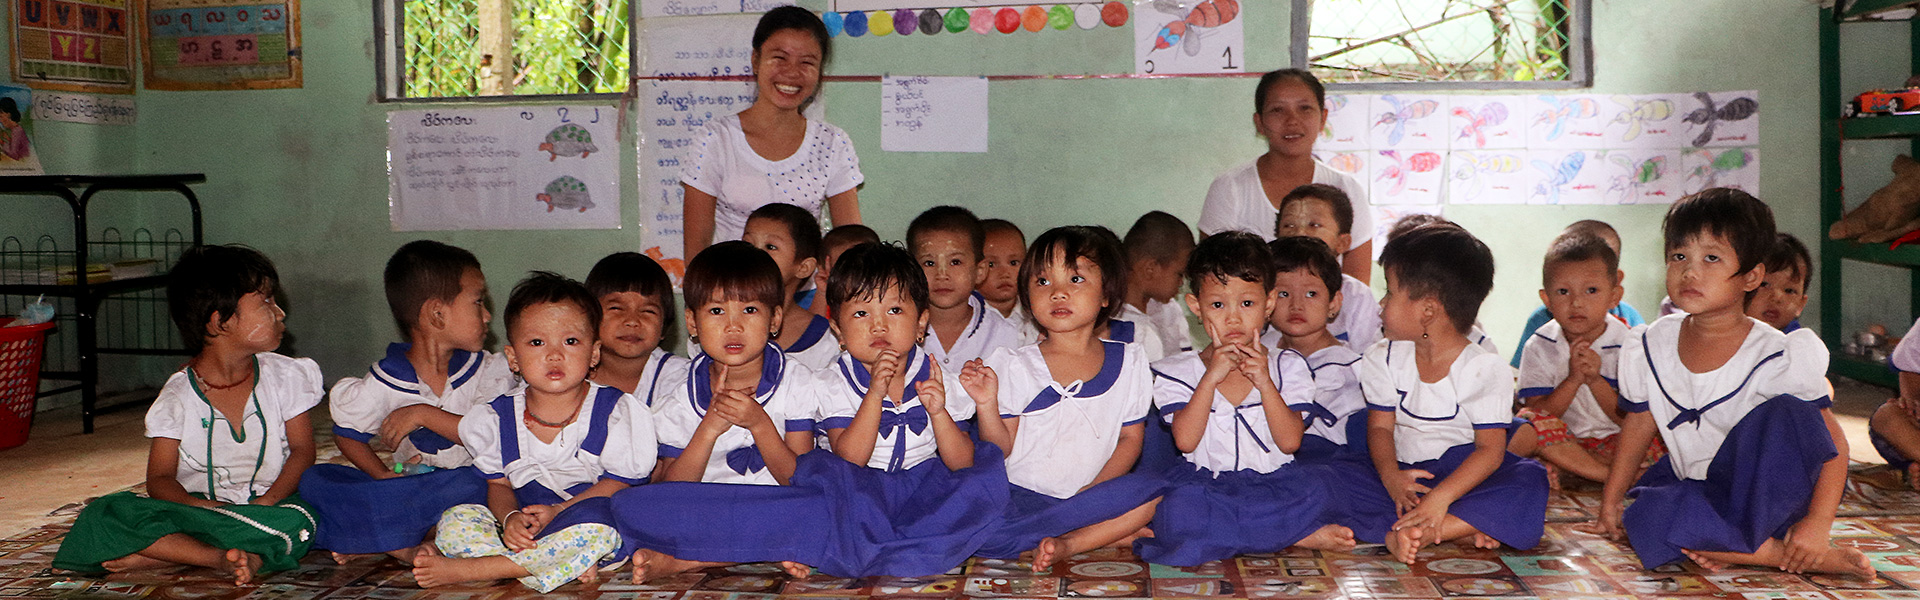 myanmar-kindergarten-children-(4)